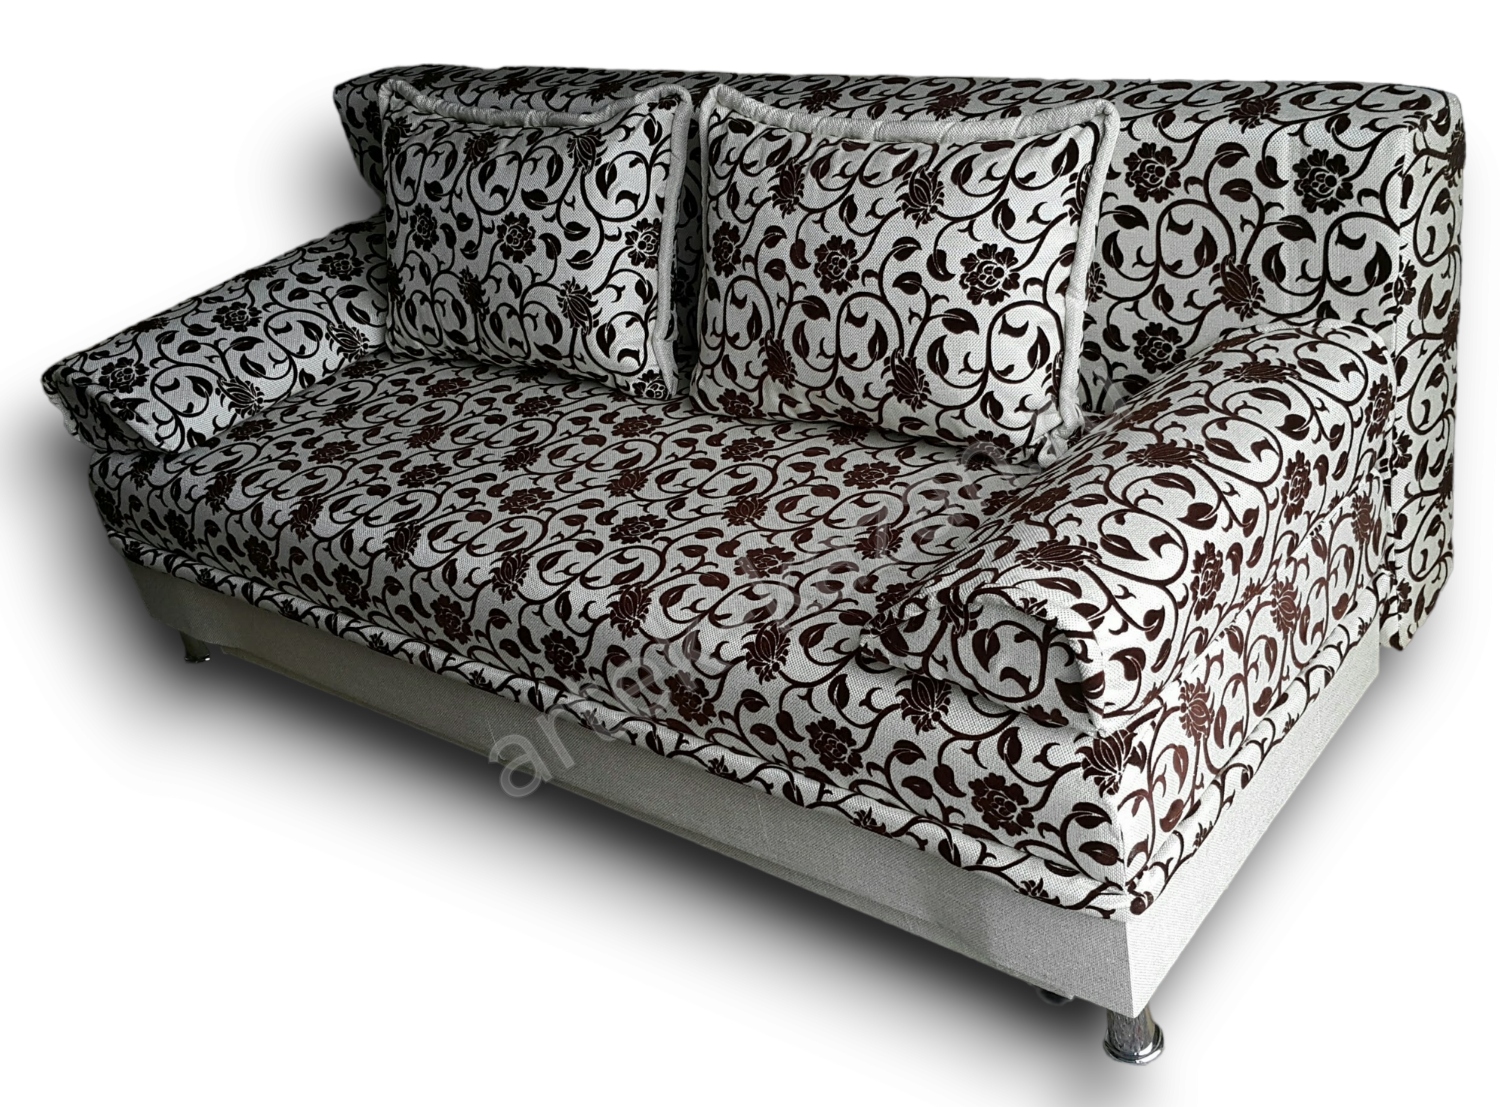 диван еврокнижка Эконом фото № 8. Купить недорогой диван по низкой цене от производителя можно у нас.